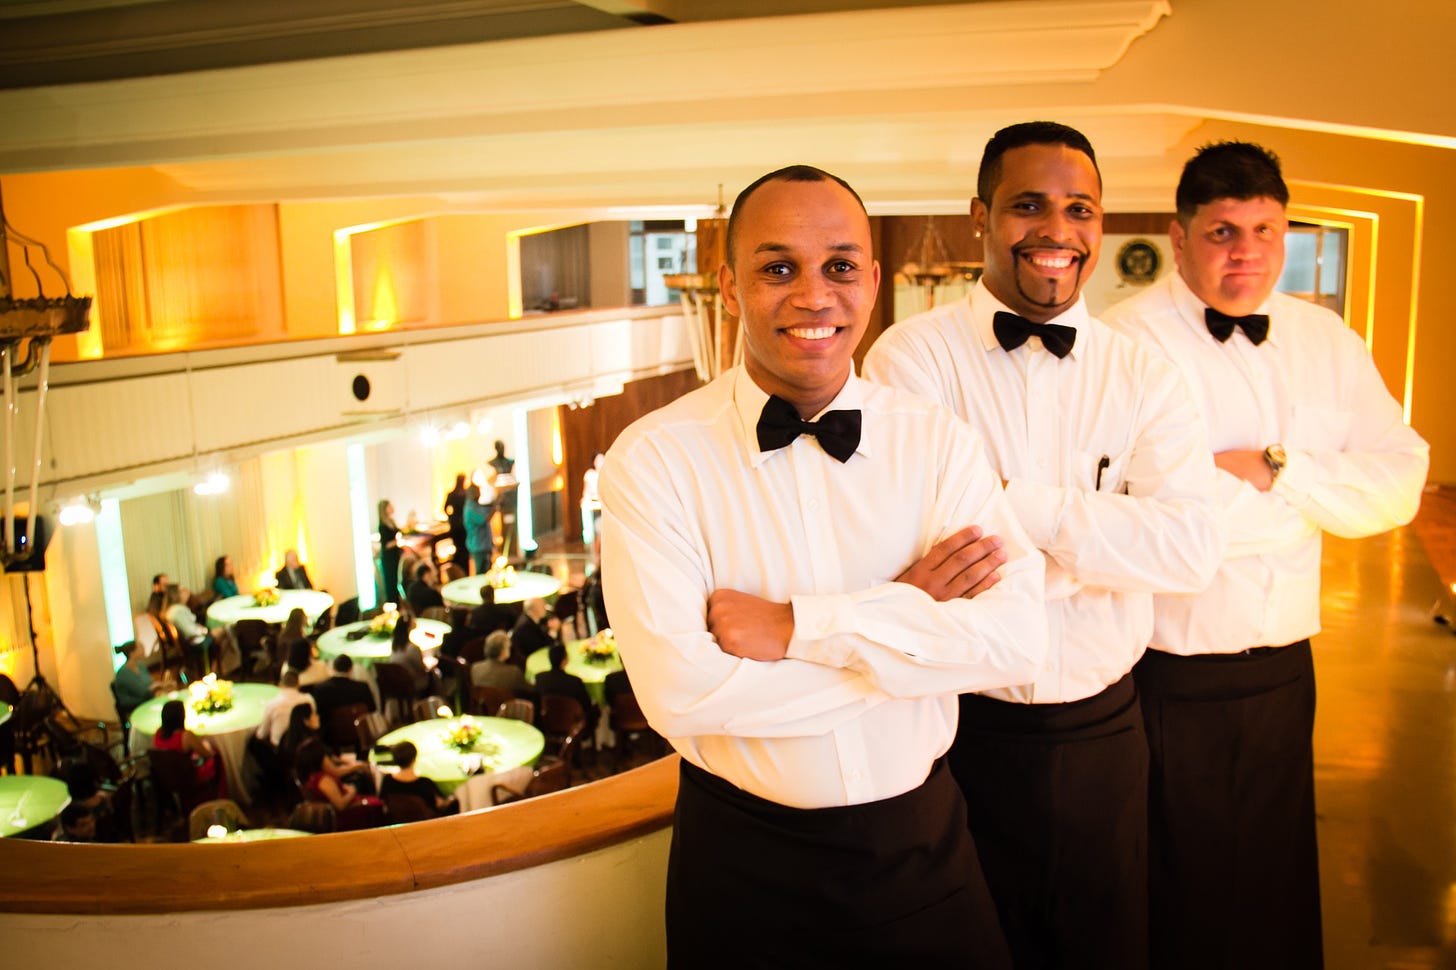 Three waiters posing